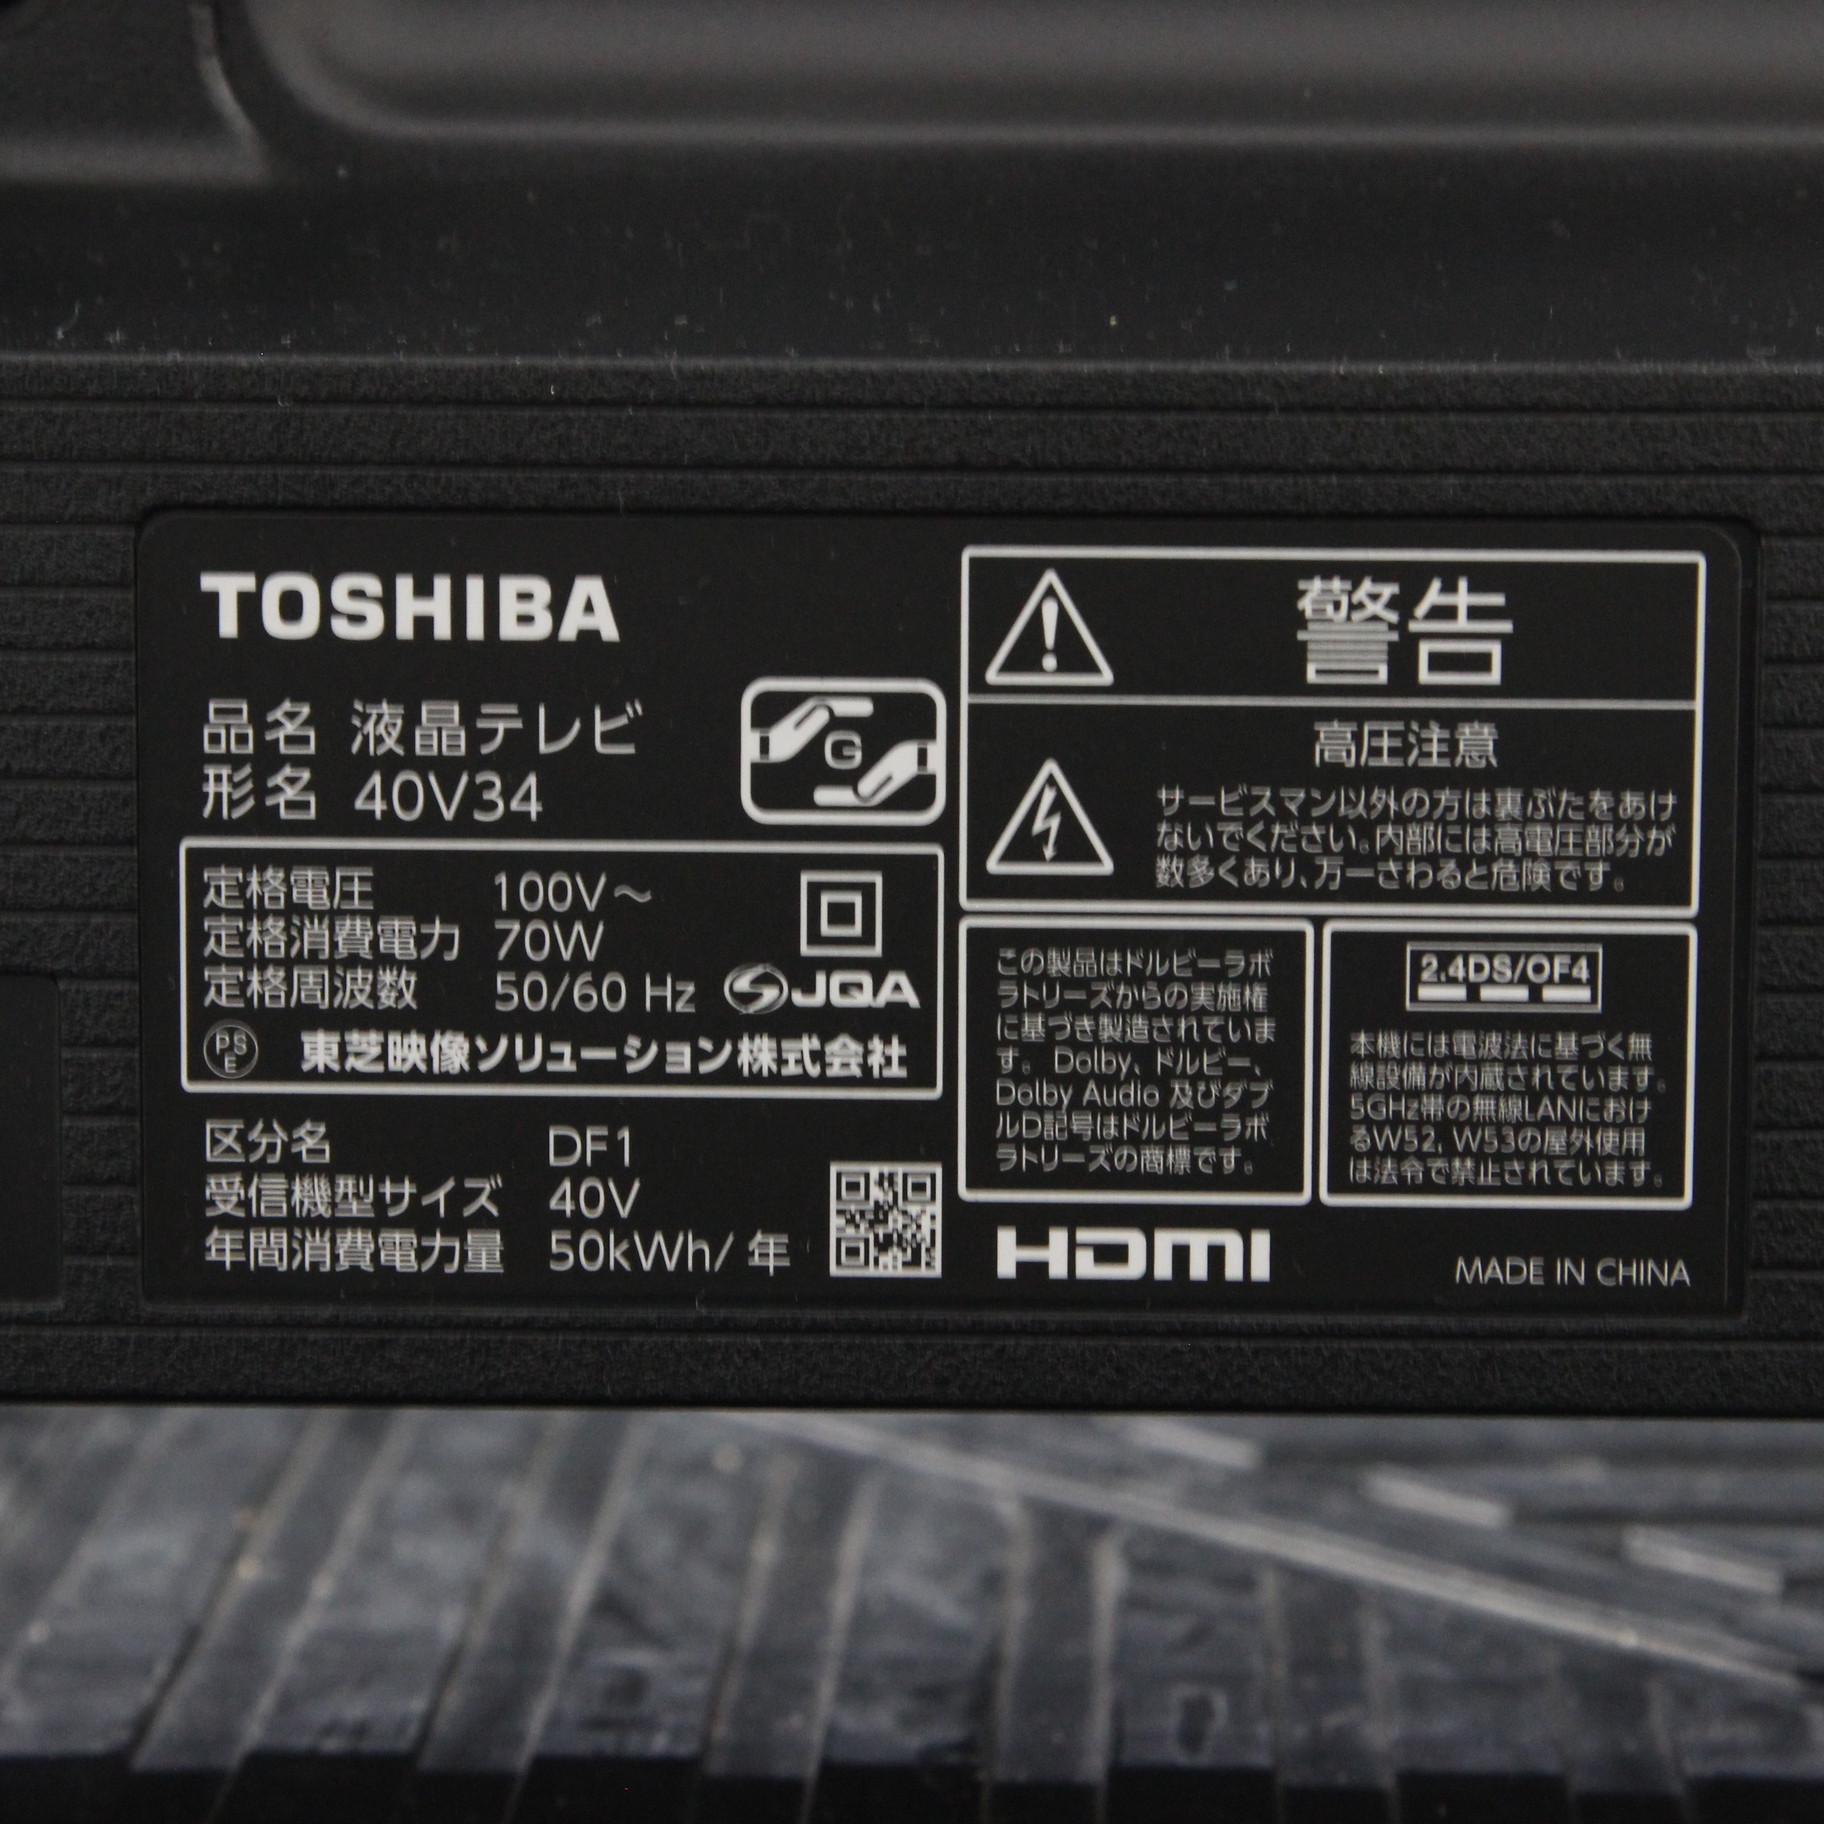 TOSHIBA 40V34 BLACK-